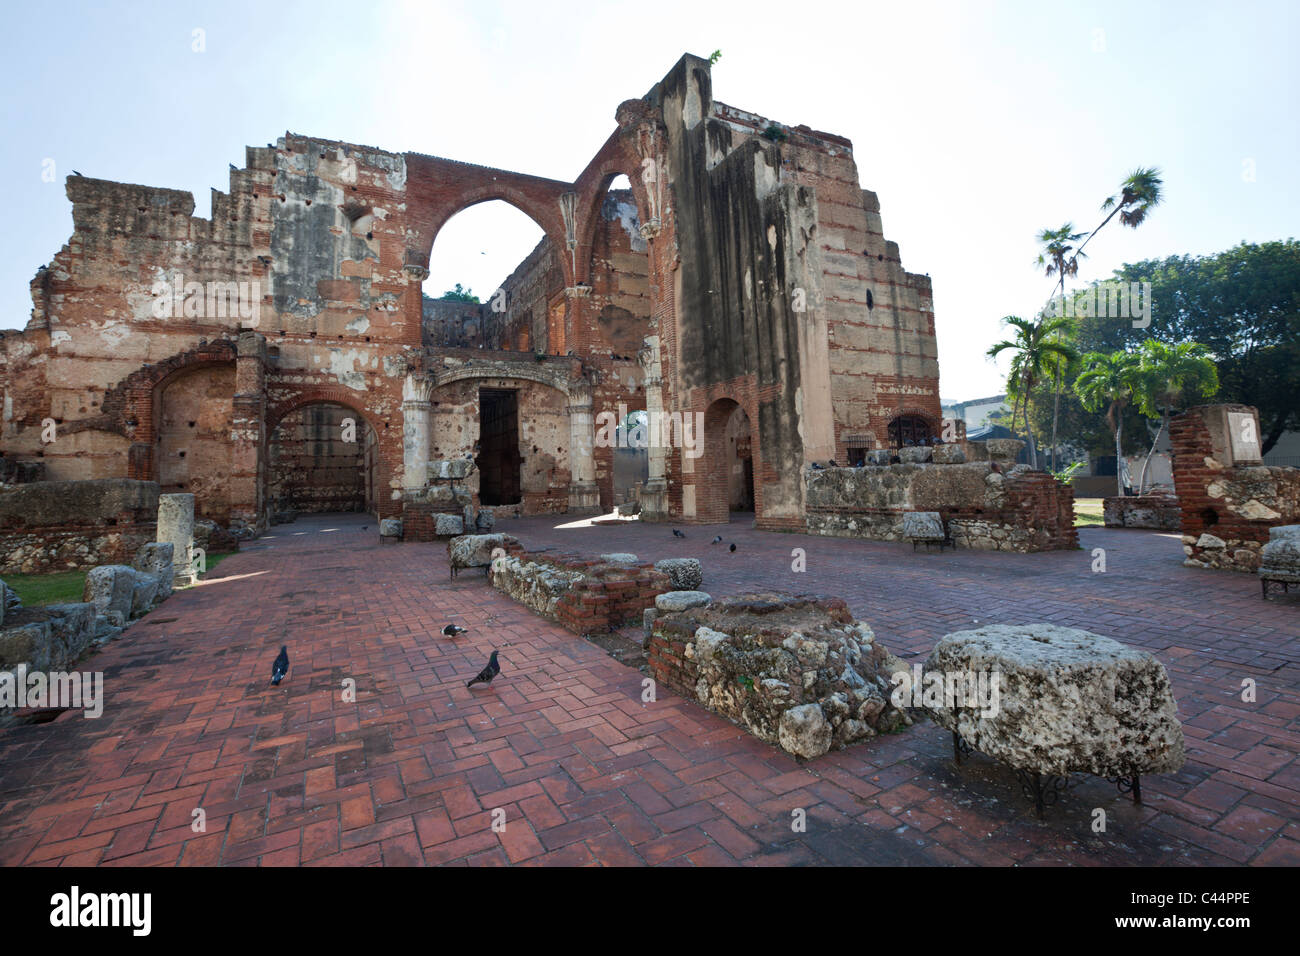 Ruin of Hospital de San Nicolas de Bari, Santo Domingo, Dominican Republic Stock Photo